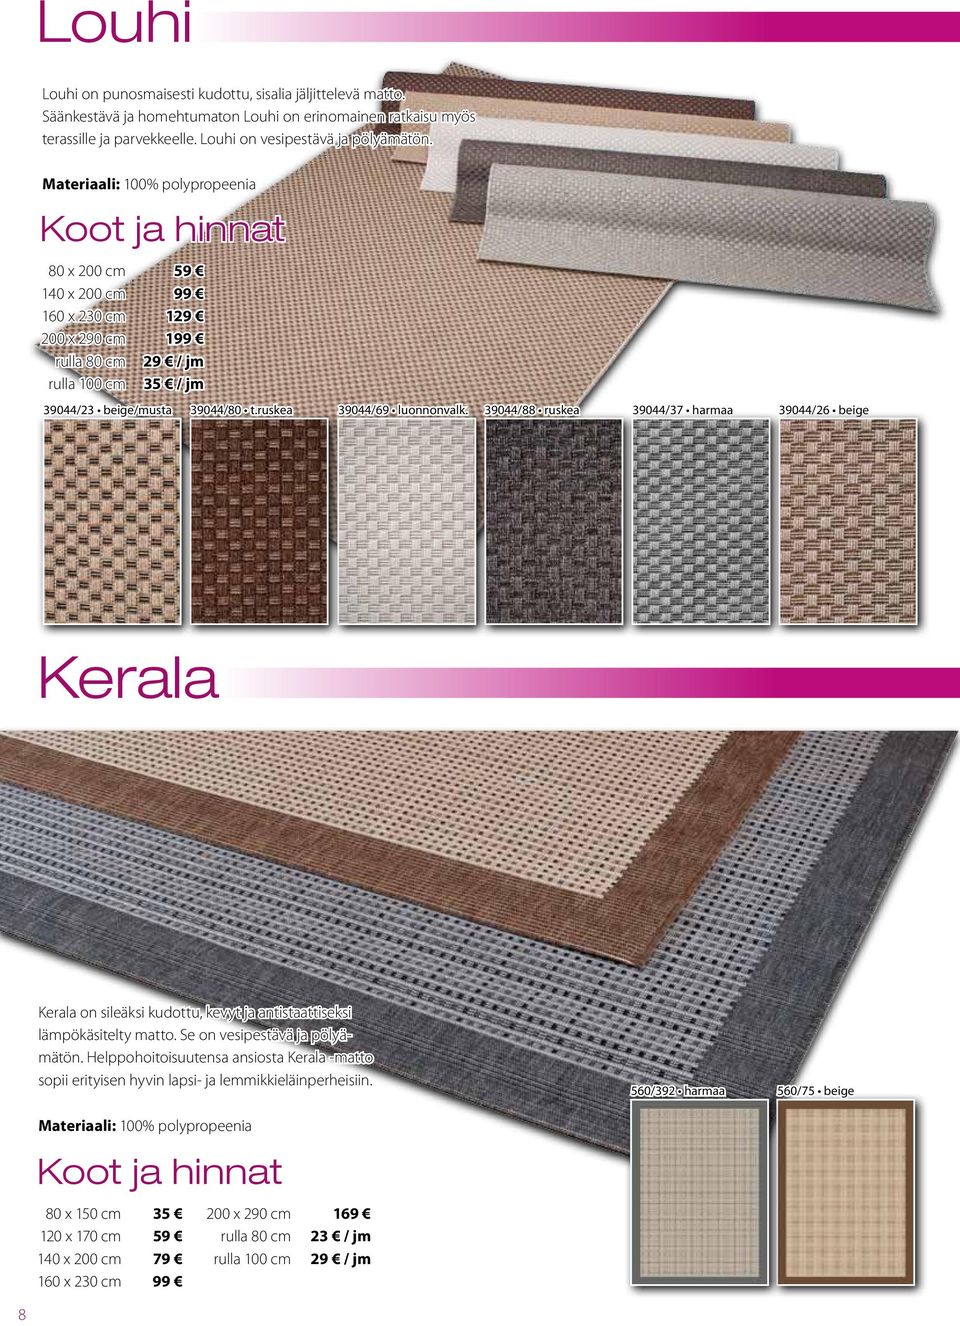 39044/88 ruskea 39044/37 harmaa 39044/26 beige Kerala Kerala on sileäksi kudottu, kevyt ja antistaattiseksi lämpökäsitelty matto. Se on vesipestävä ja pölyämätön.